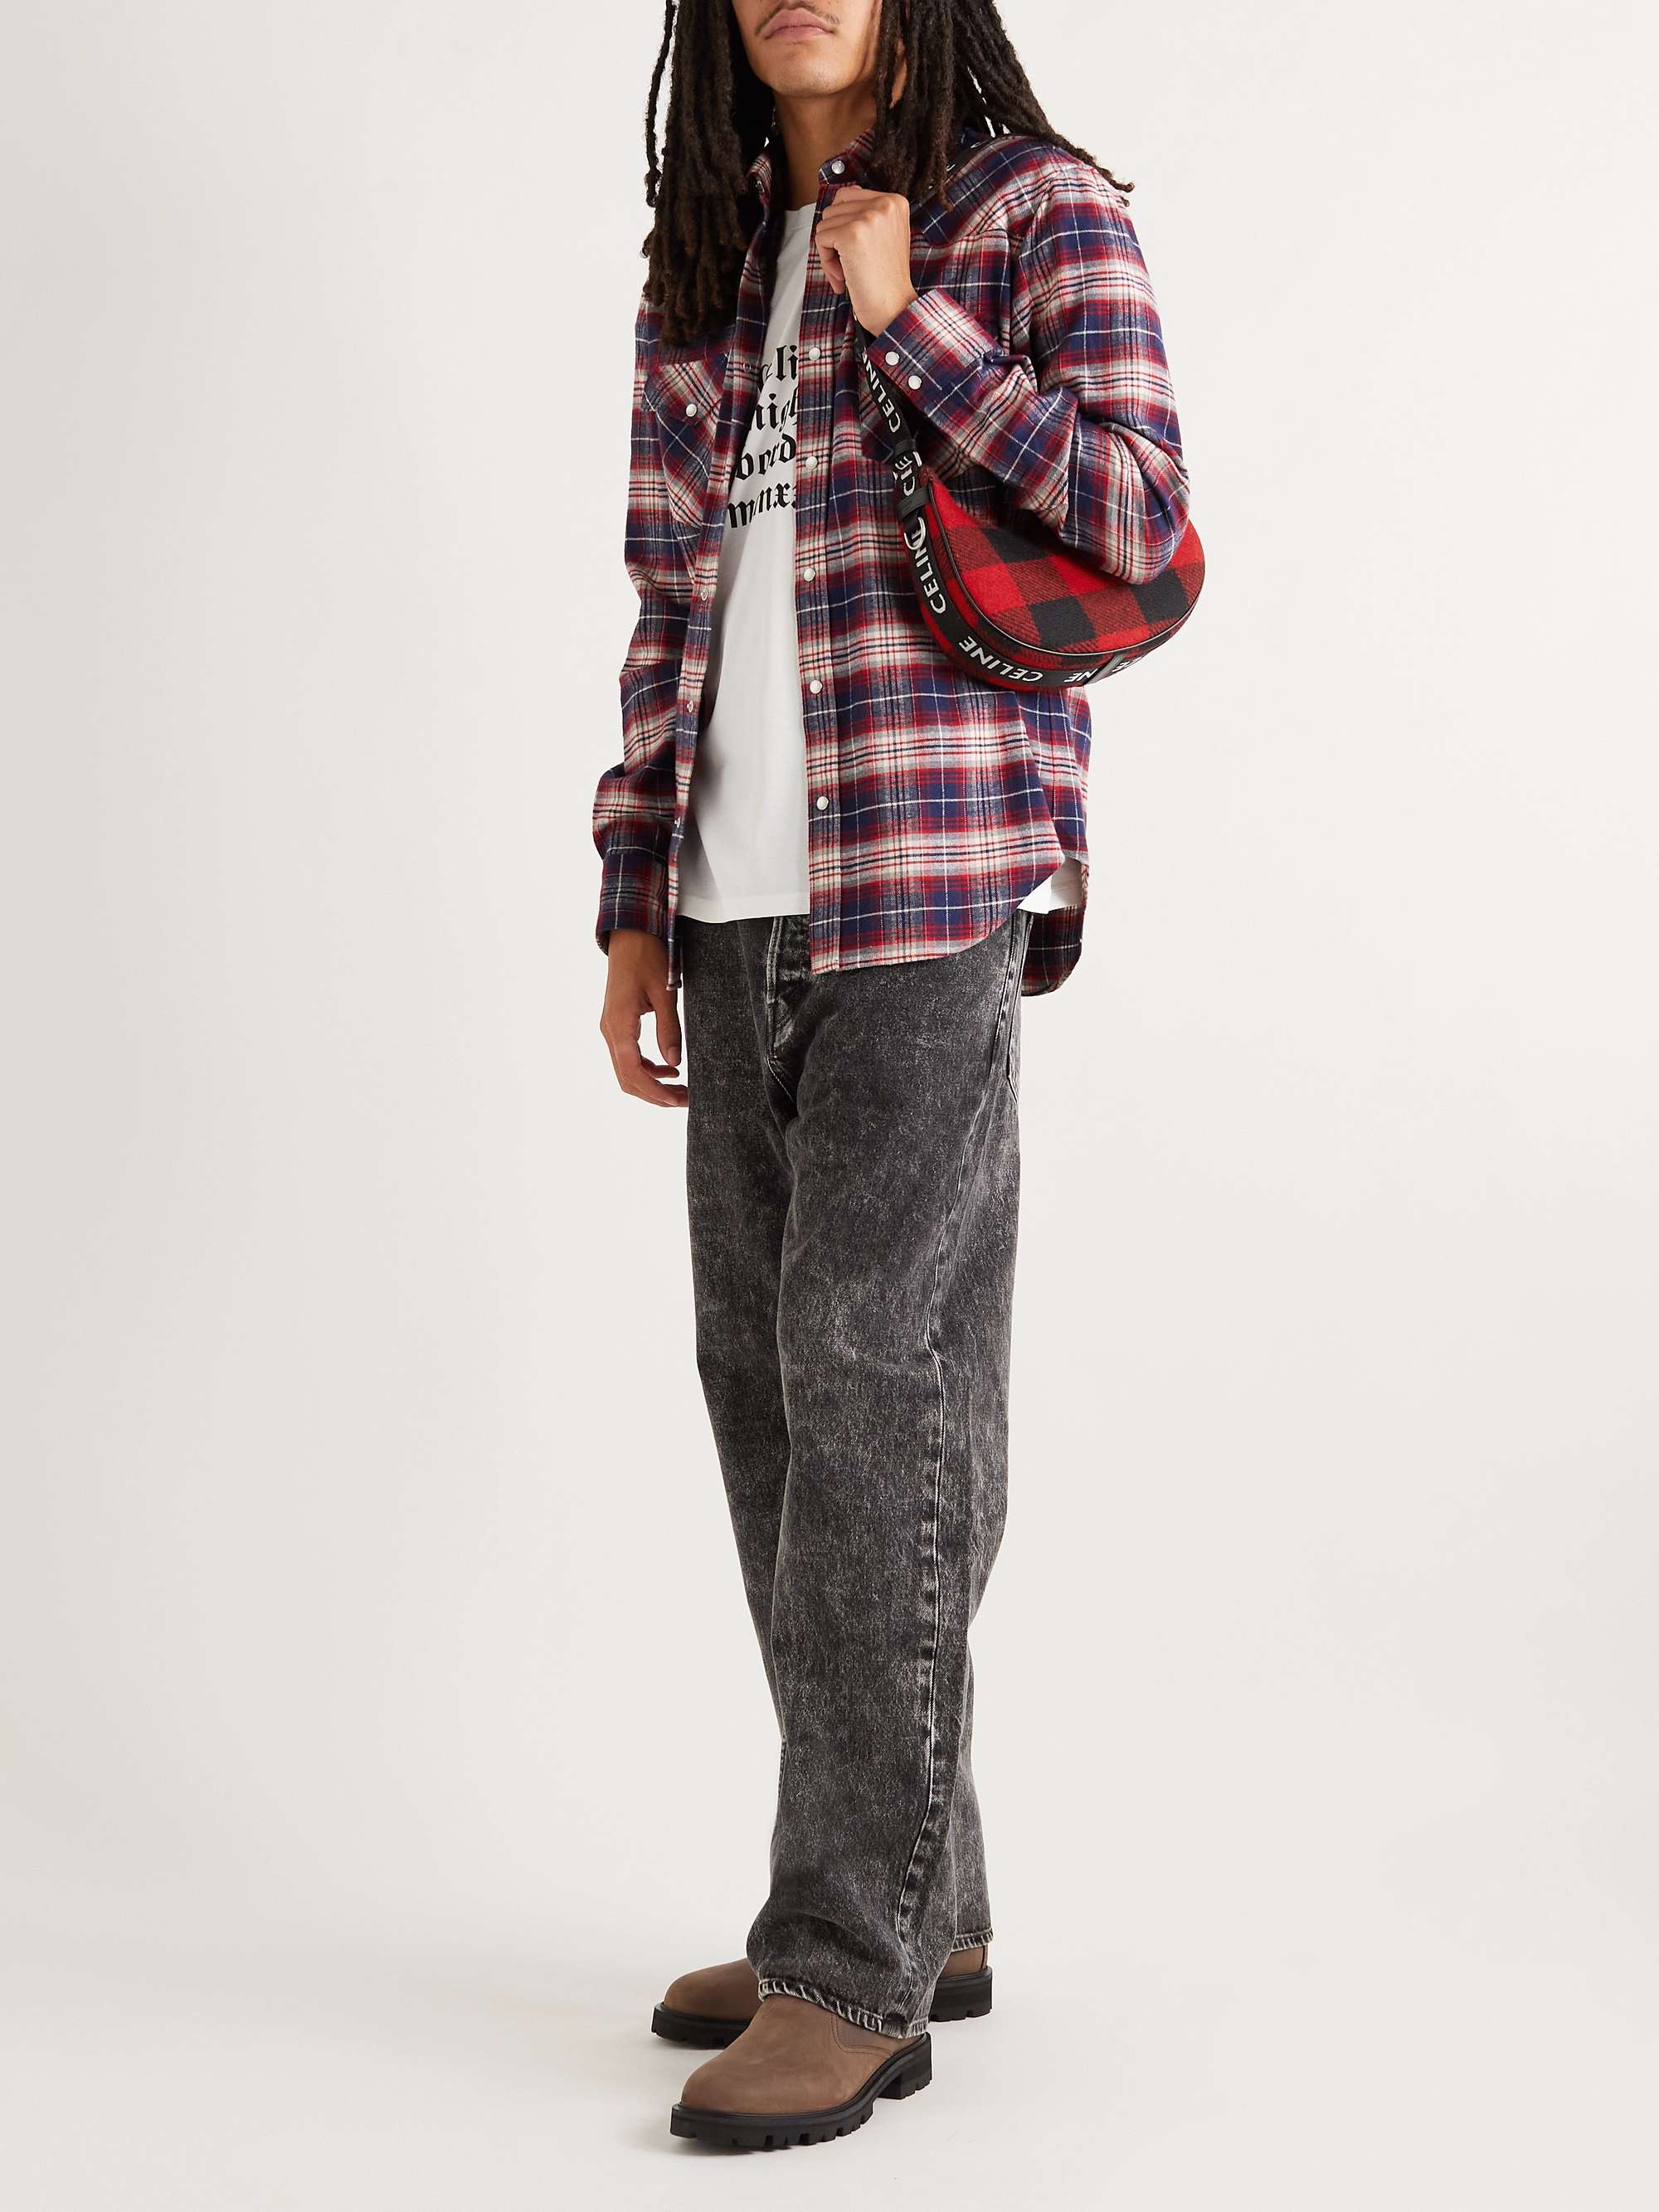 CELINE HOMME Ava Leather-Trimmed Flannel Messenger Bag